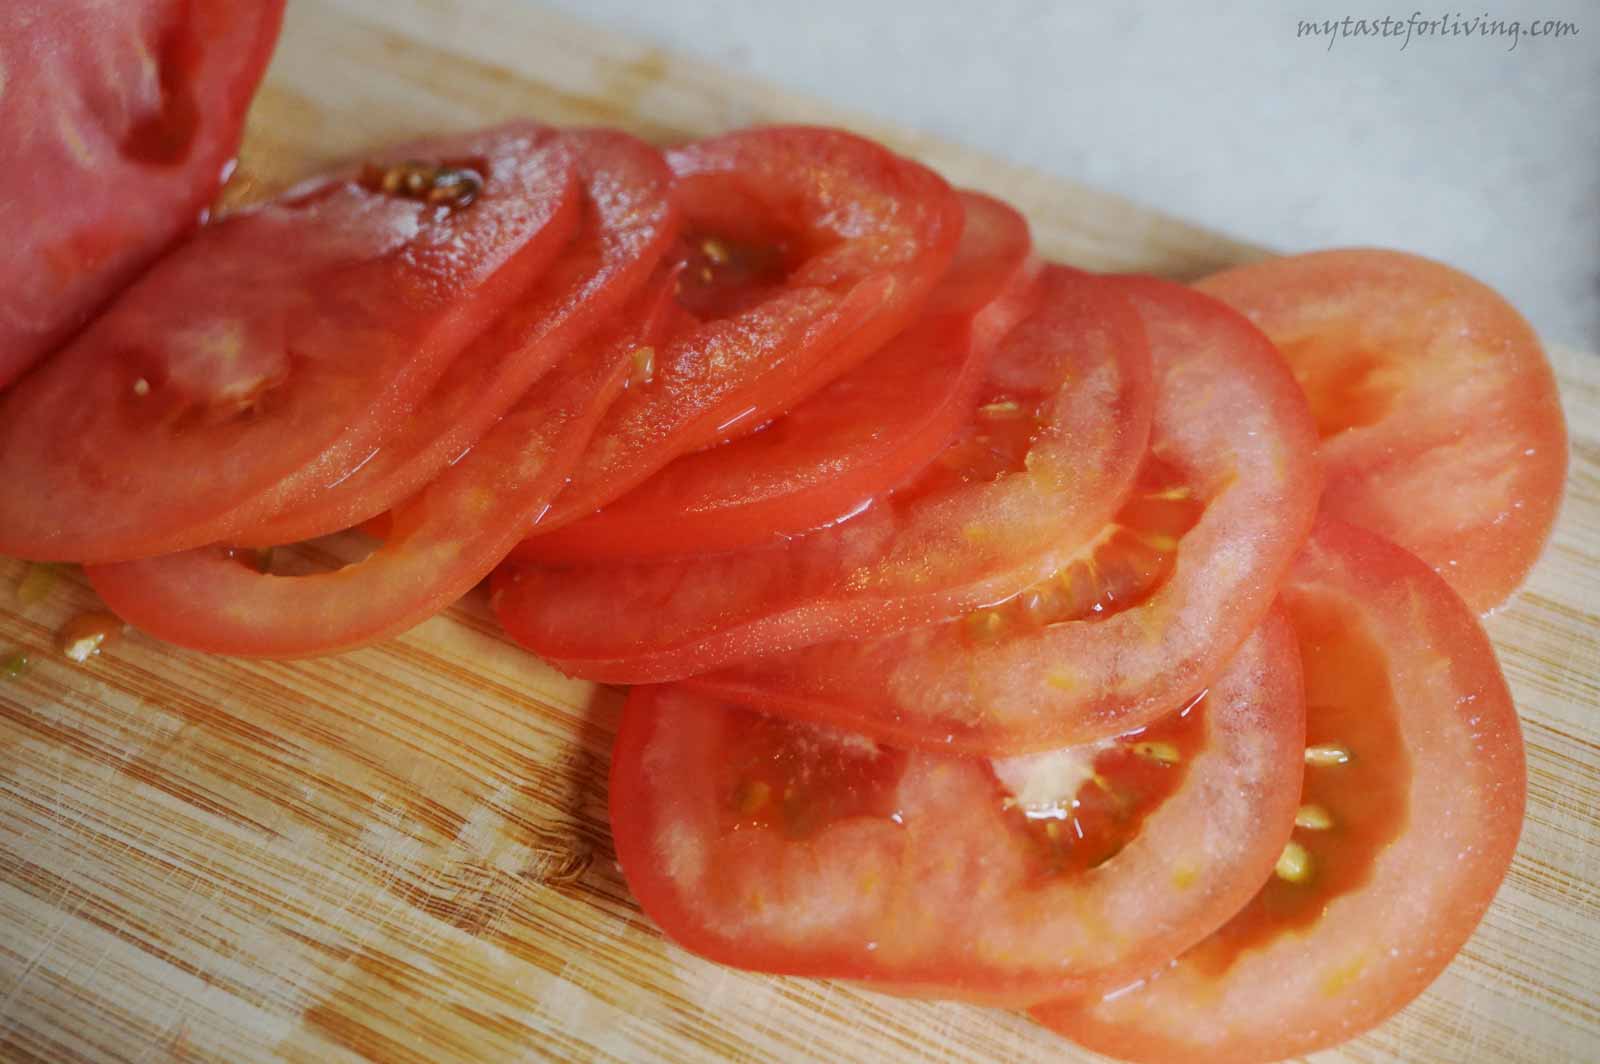 Любимо лятно ястие! Комбинацията от тиквички и домати е чудесна, а вкусът им се допълва като добавим сирене и пармезан. С аромата на лук, чесън, босилек и пармезан – ястието става неописуемо вкусно. 